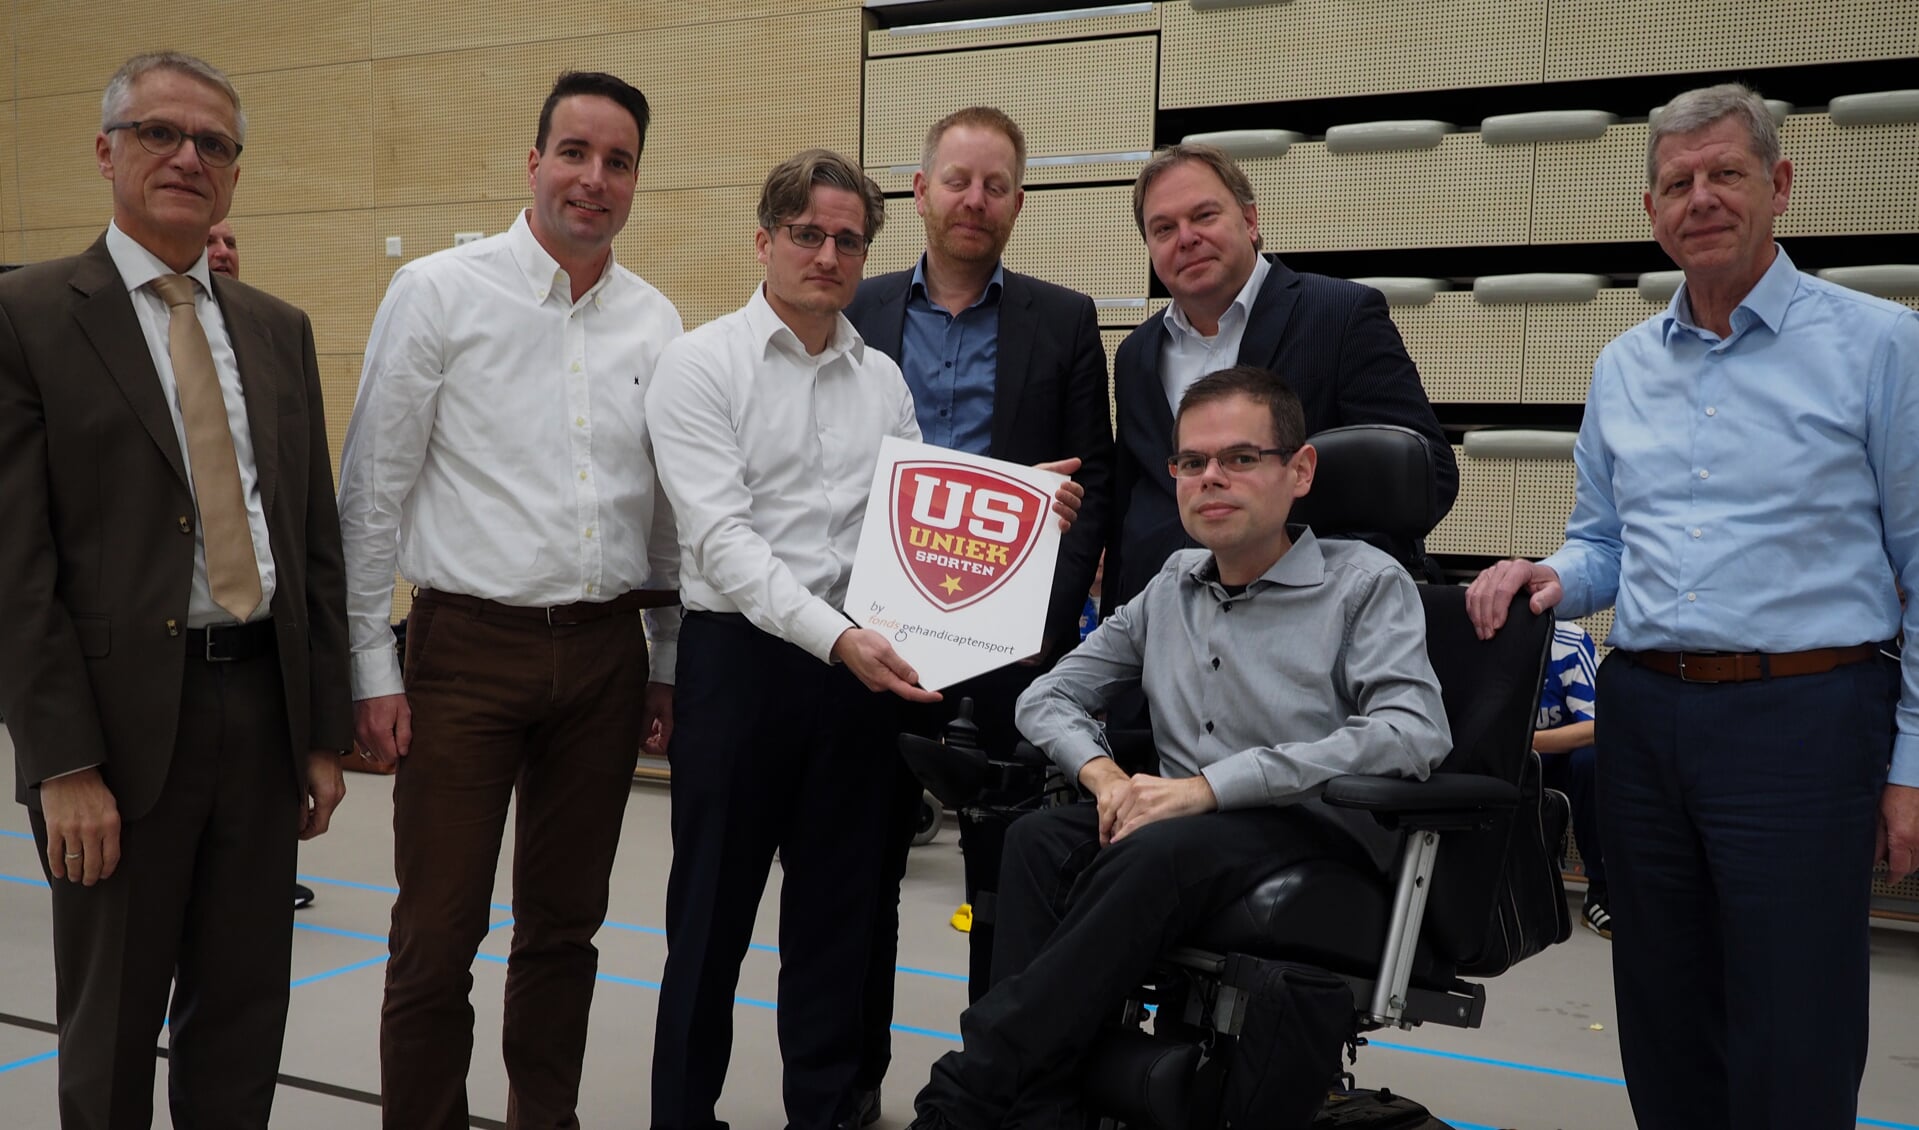 Wethouders Regio Alkmaar, waaronder Rob Opdam uit Heiloo, zijn trots aanwezig bij de lancering van het (landelijke) platform Uniek Sporten